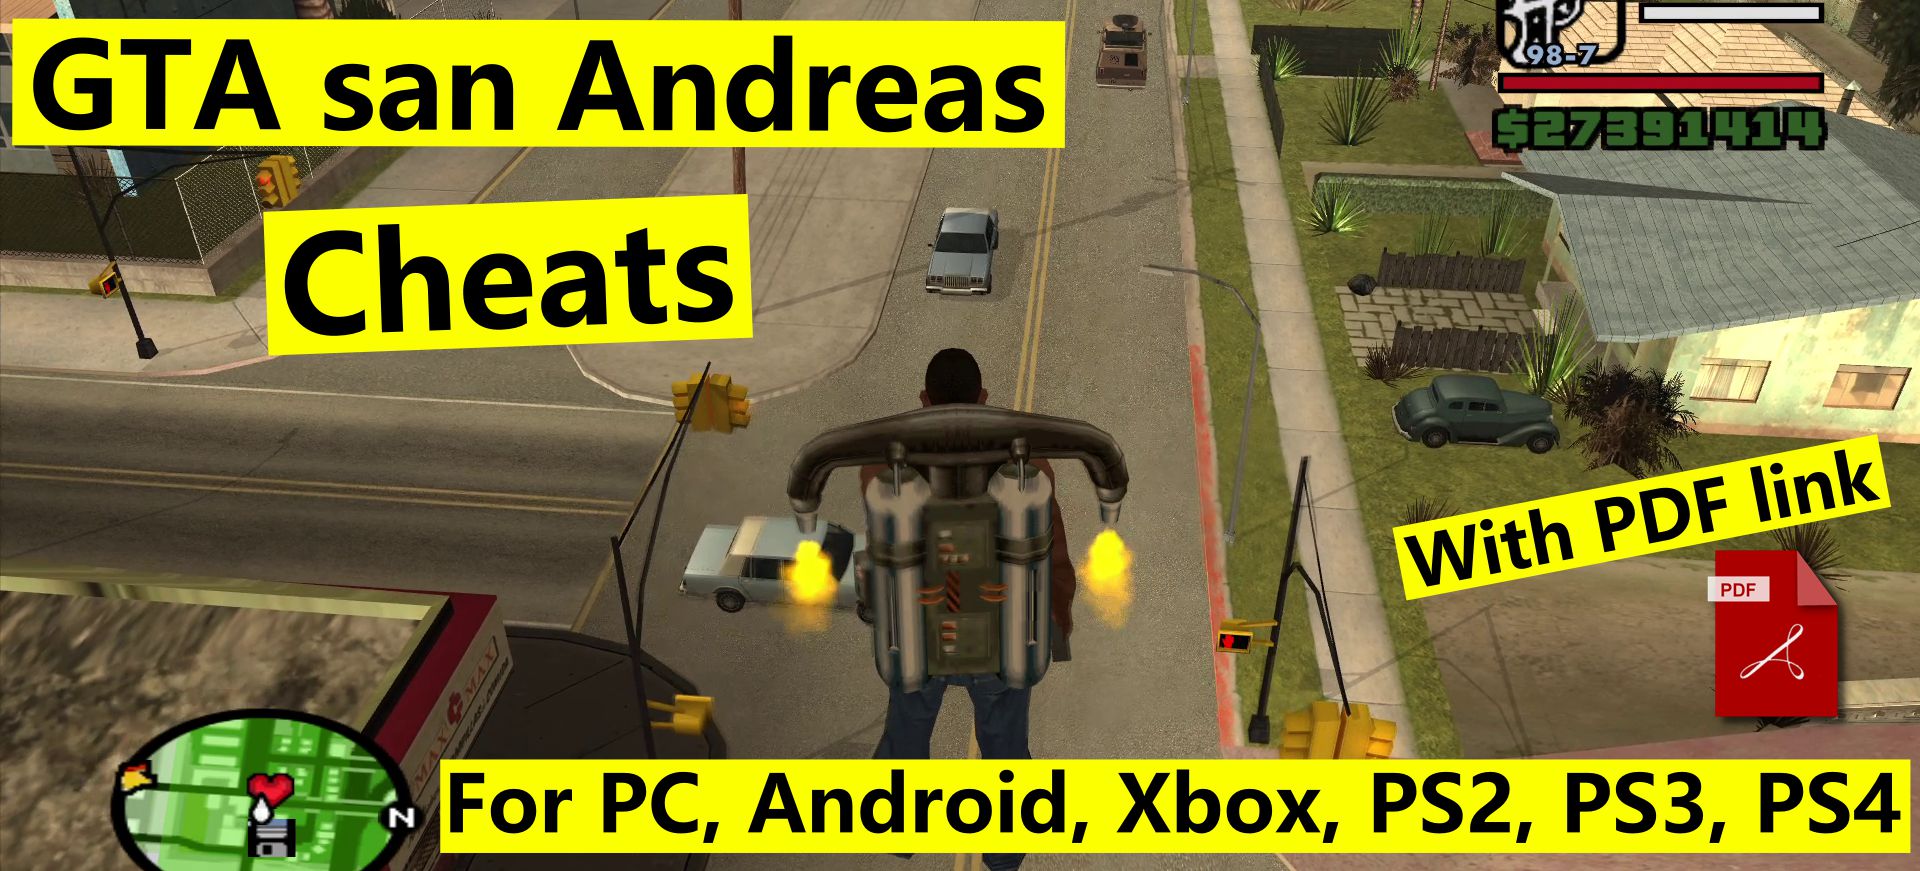 GTA San Andreas cheats – PC, Android, PS2, PS3, PS4